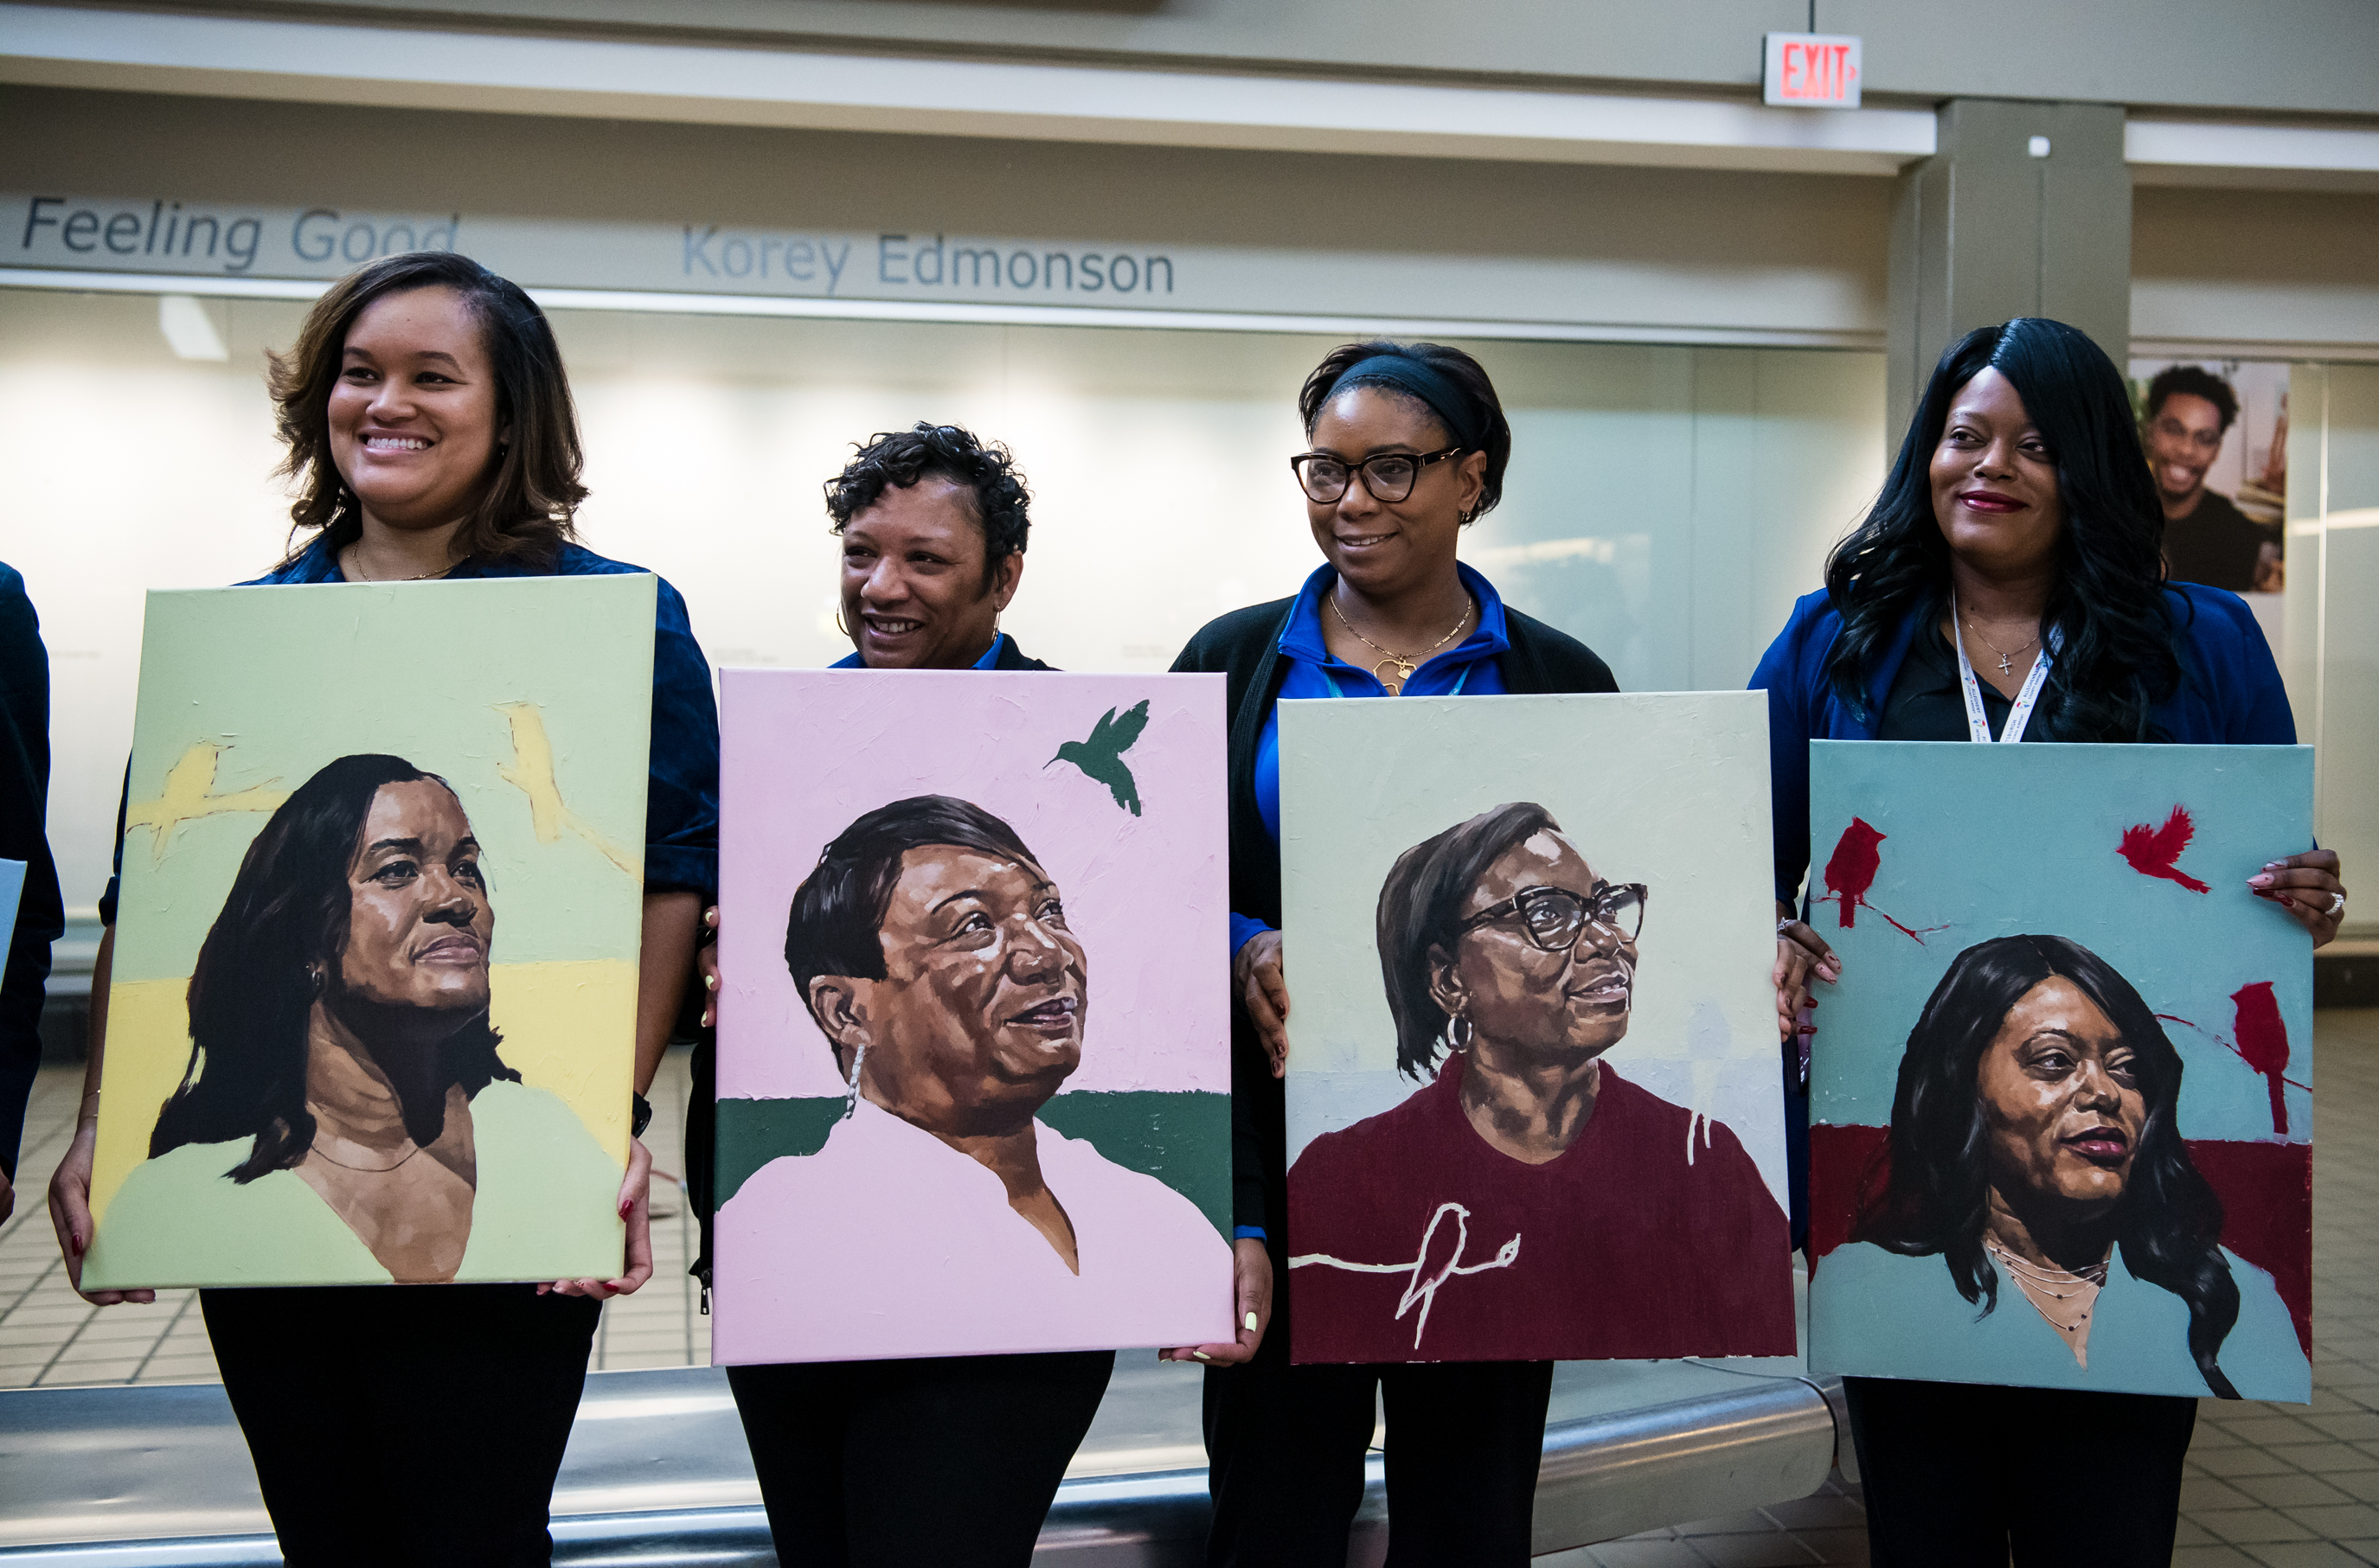 8 Black Women ‘Feeling Good’ in PIT Portrait Series